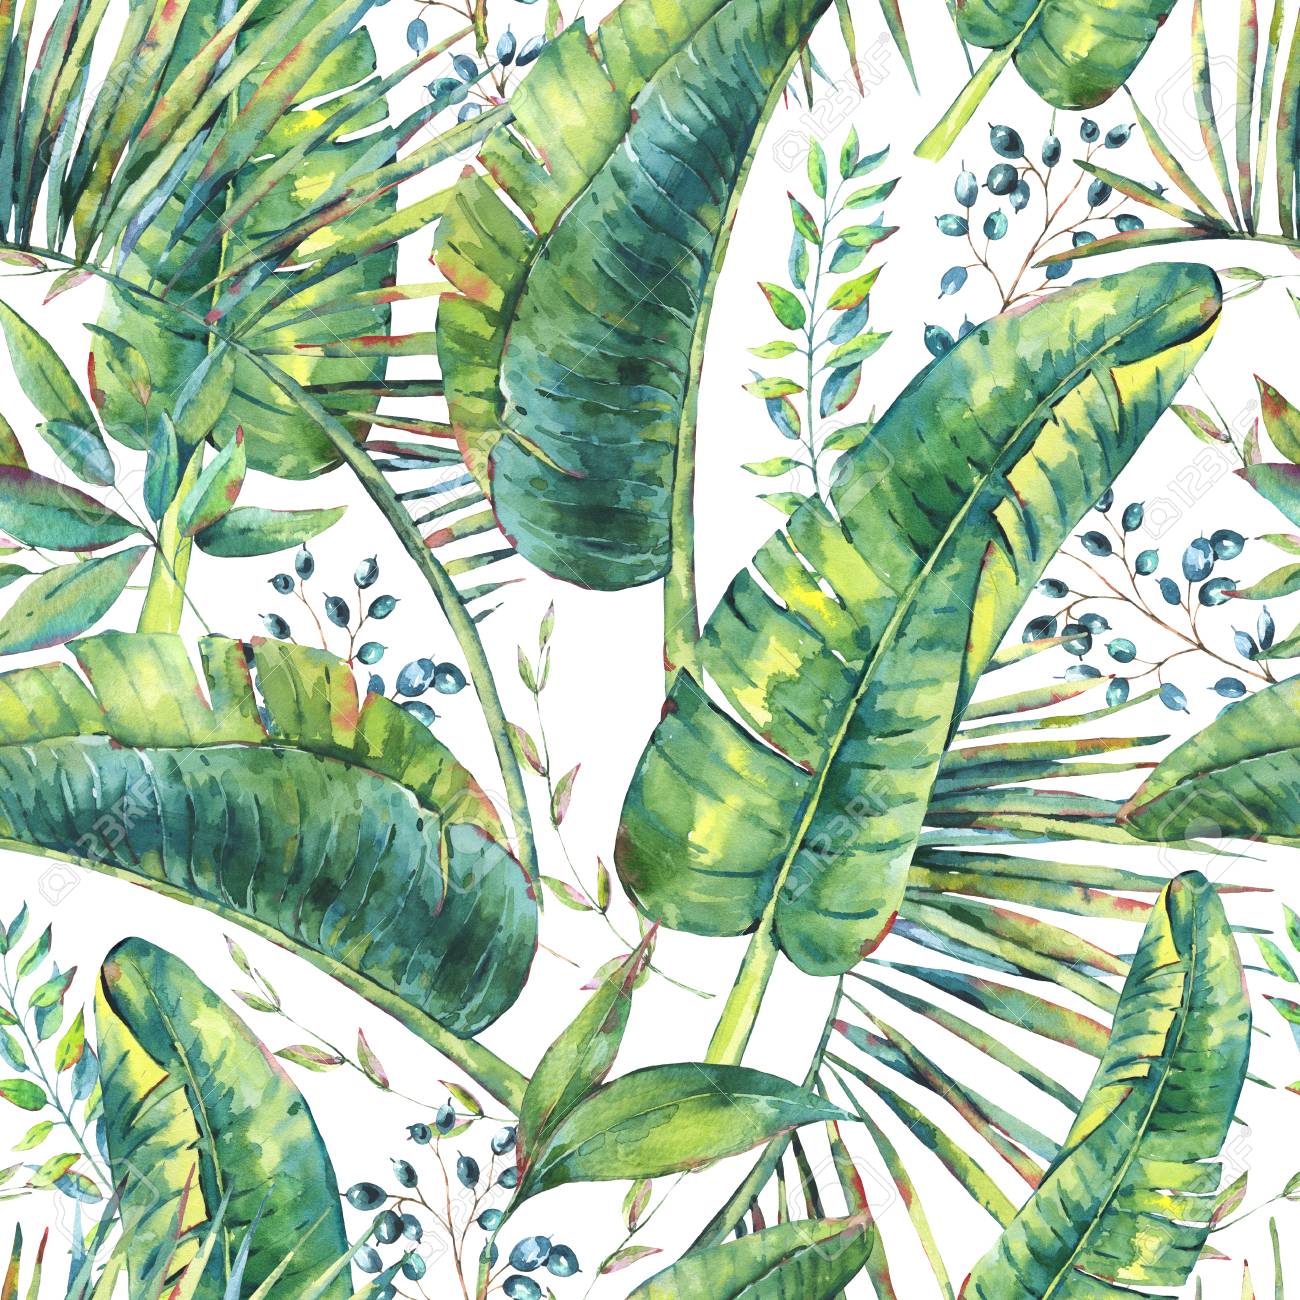 watercolor-banana-leaf-wallpapers-4k-hd-watercolor-banana-leaf